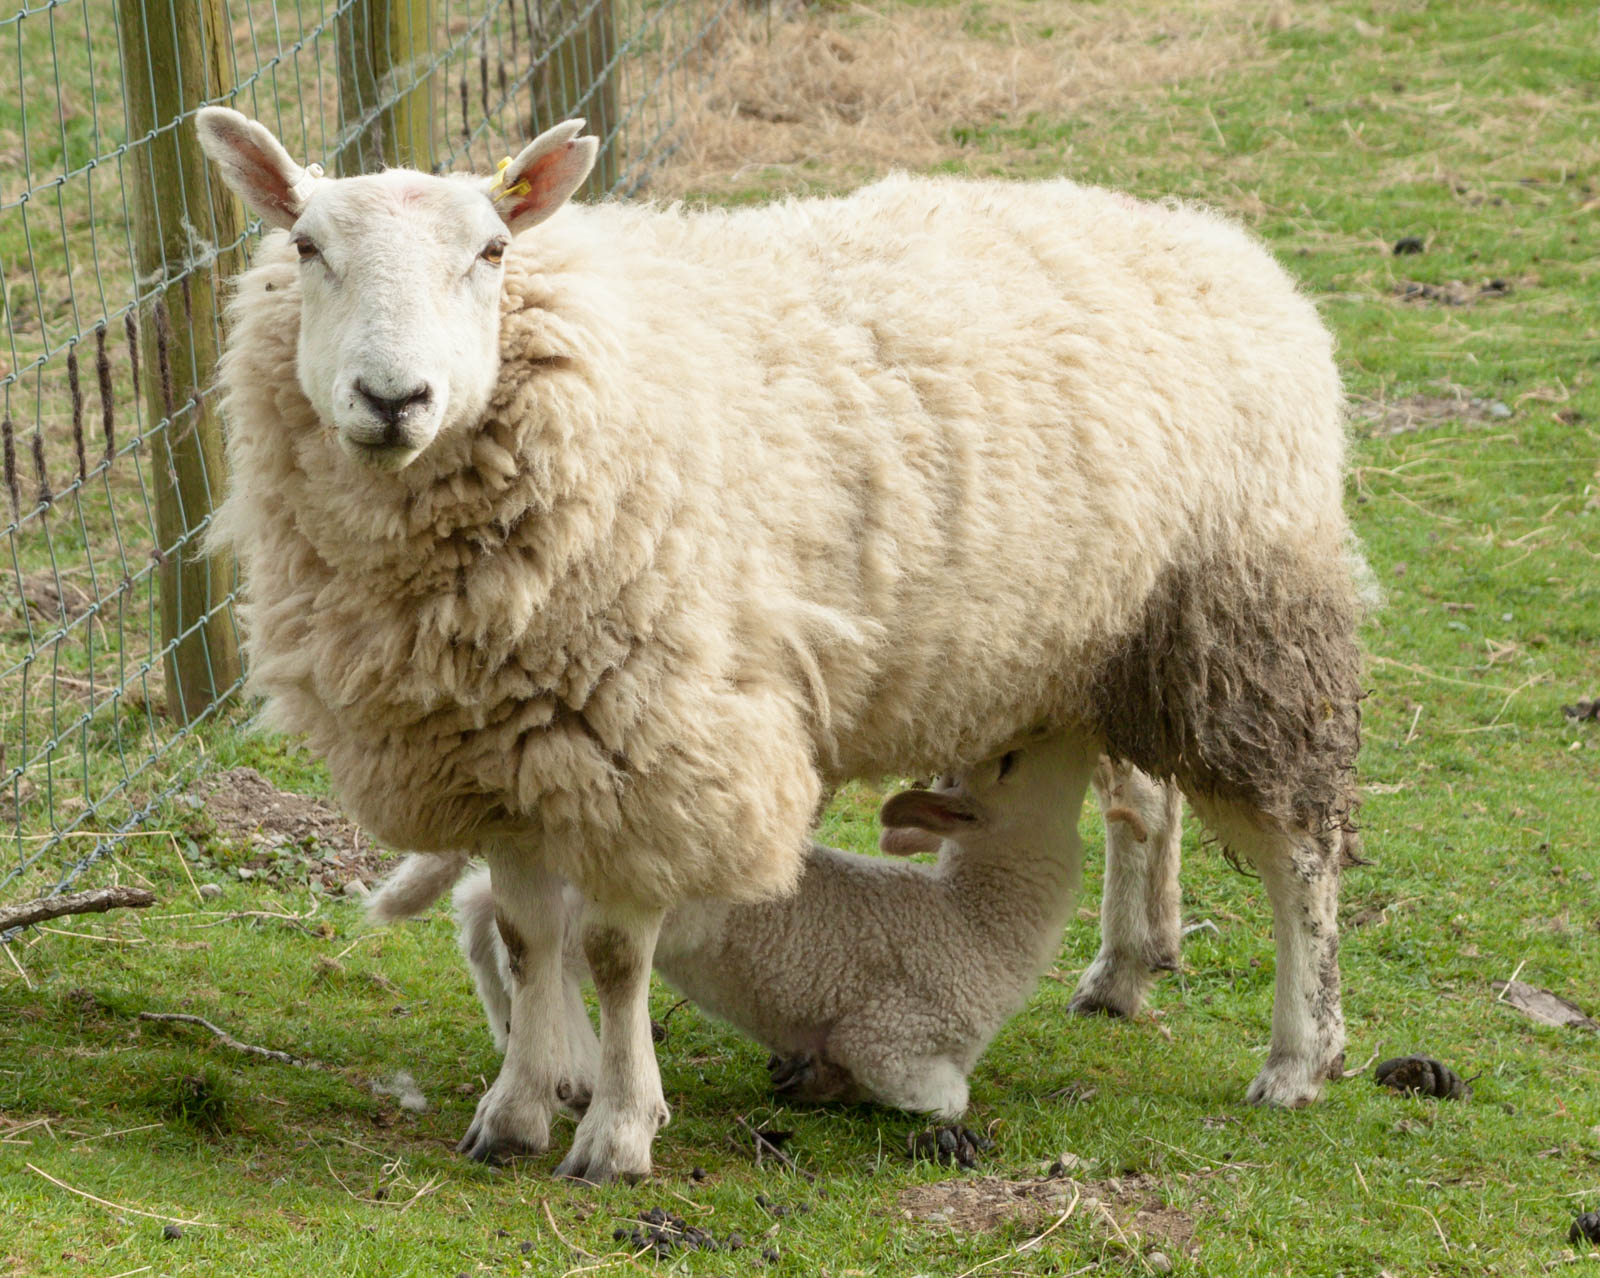 Sheep and lamb IMG_1395.jpg